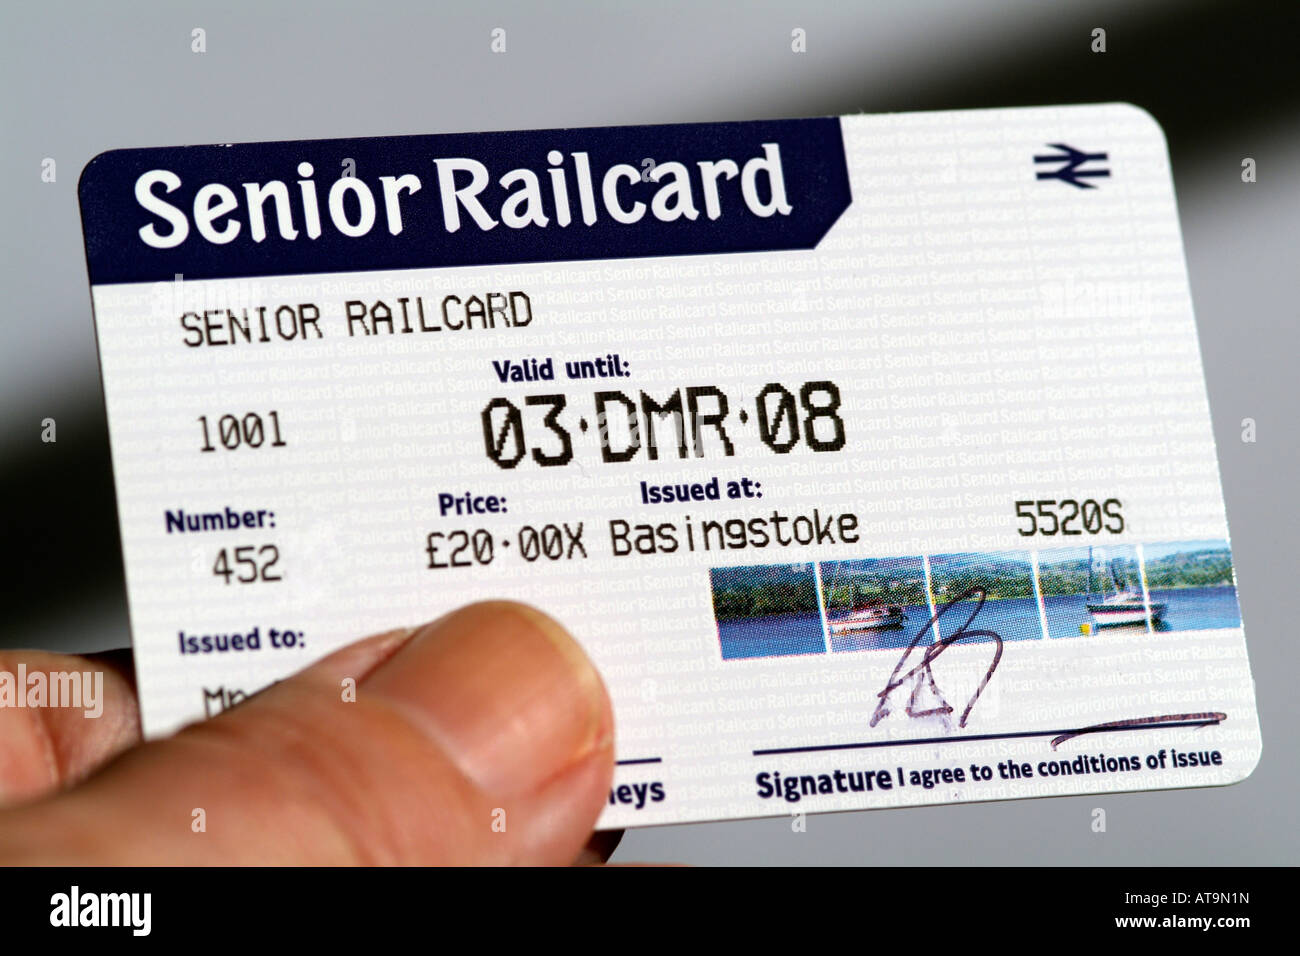 Rail Card Senior Tabitomo